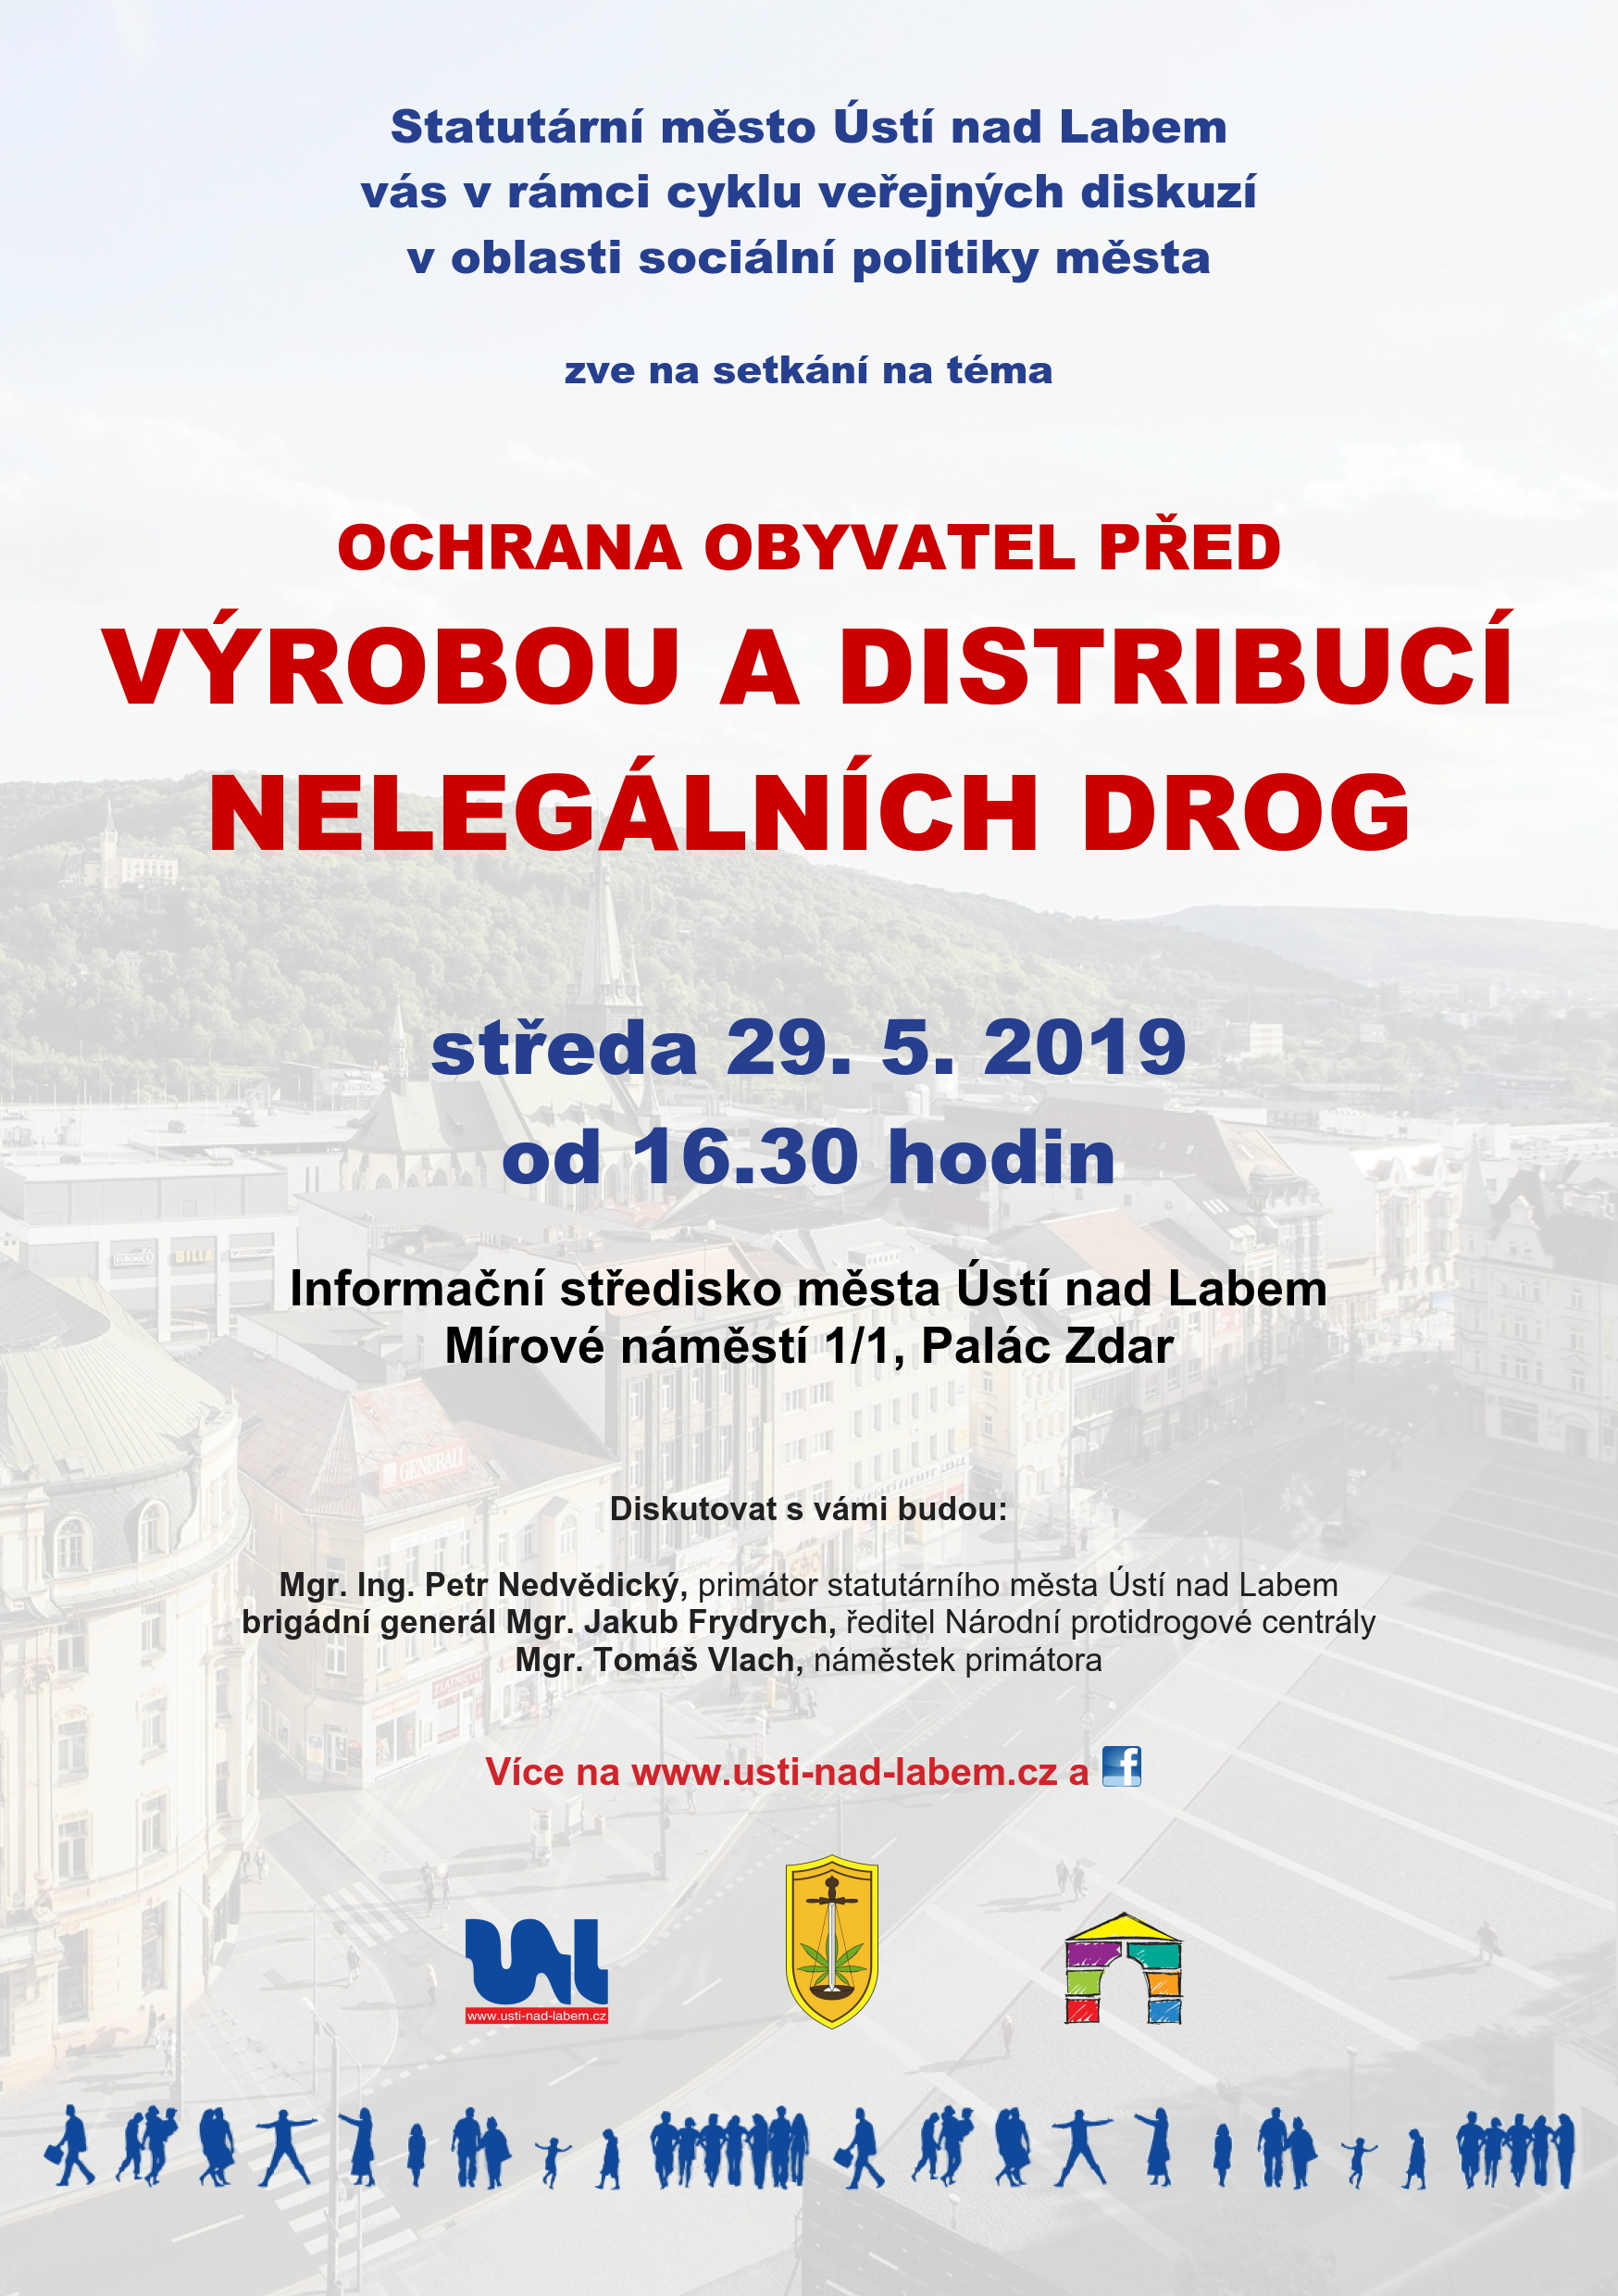 Pozvánka na veřejnou diskuzi zaměřenou na drogovou problematiku v Ústí nad Labem